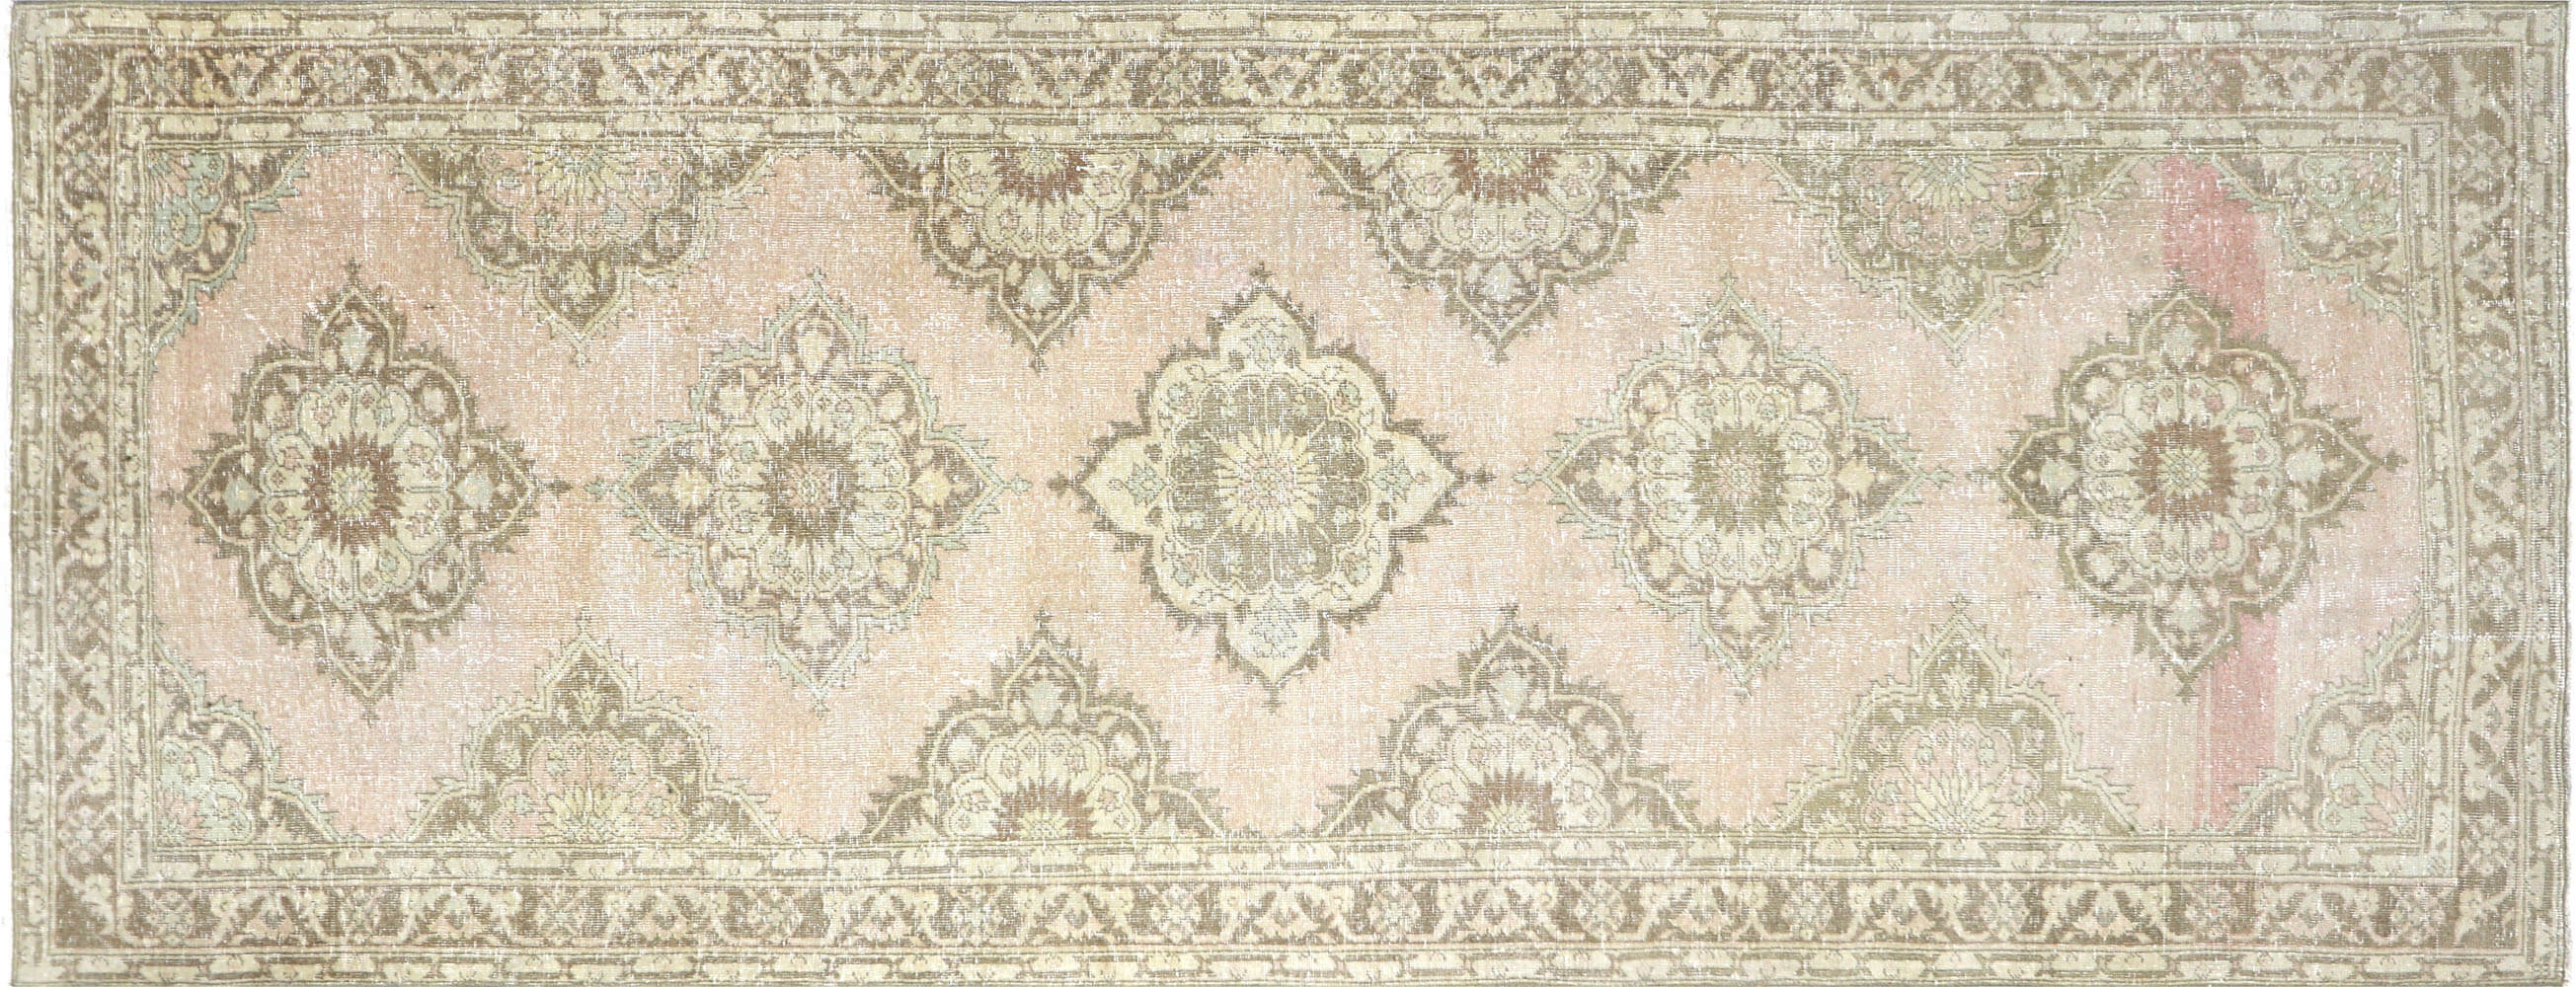 Vintage Turkish Oushak Carpet - 4'10" x 12'7"